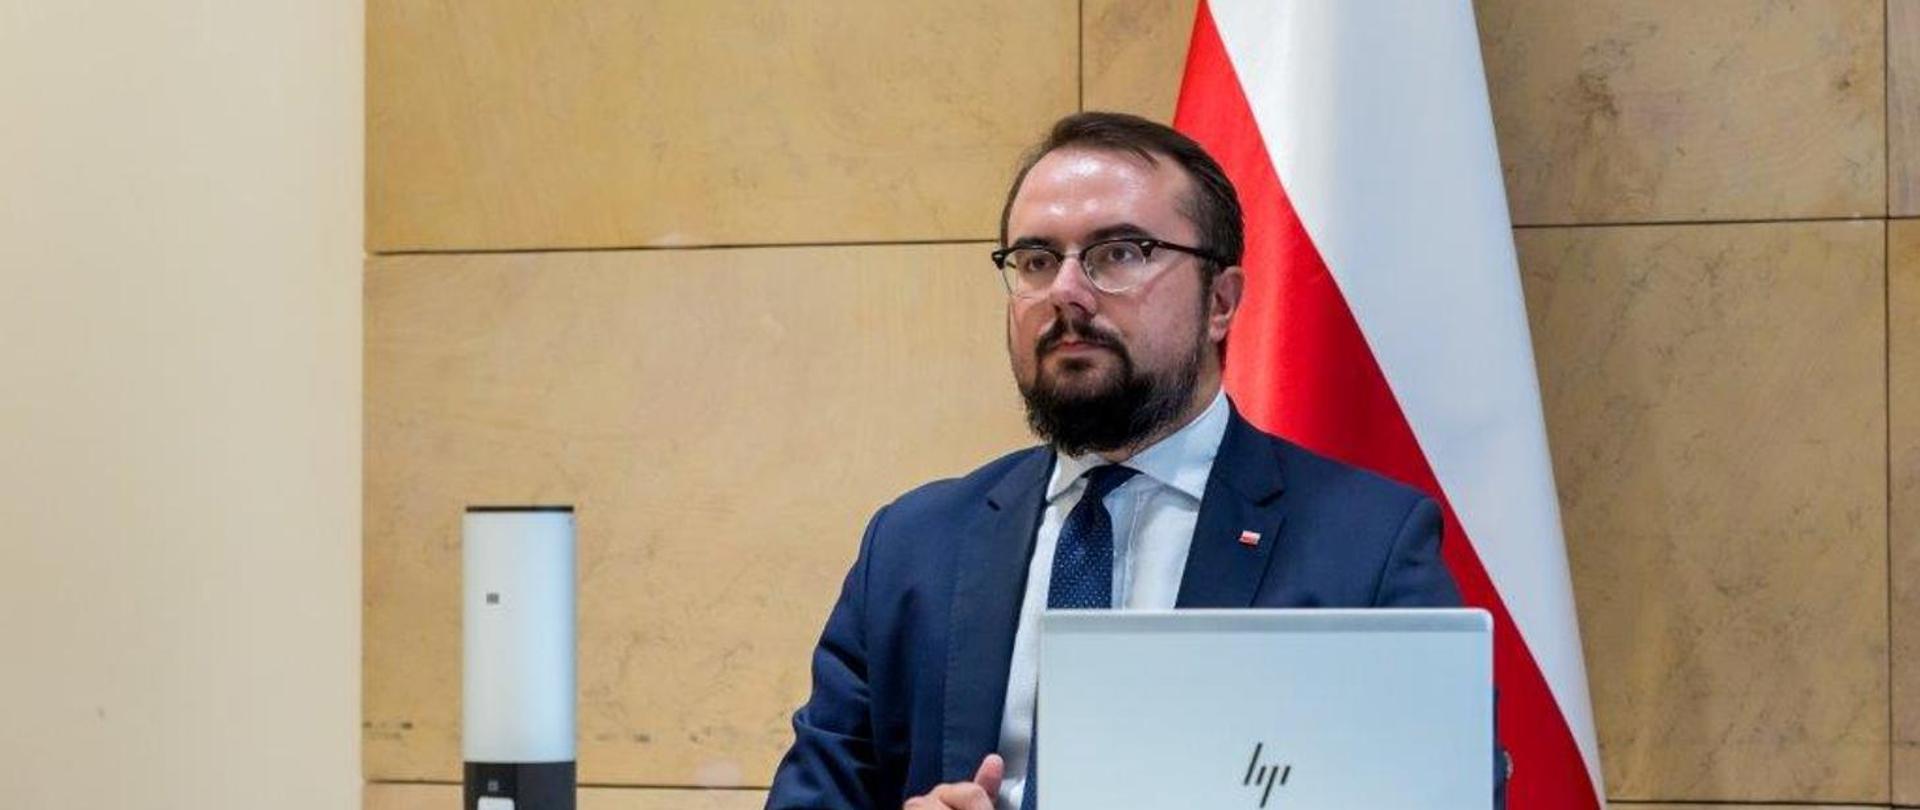 Wiceminister Jabłoński na tle polskiej flagi bierze udział w spotkaniu online